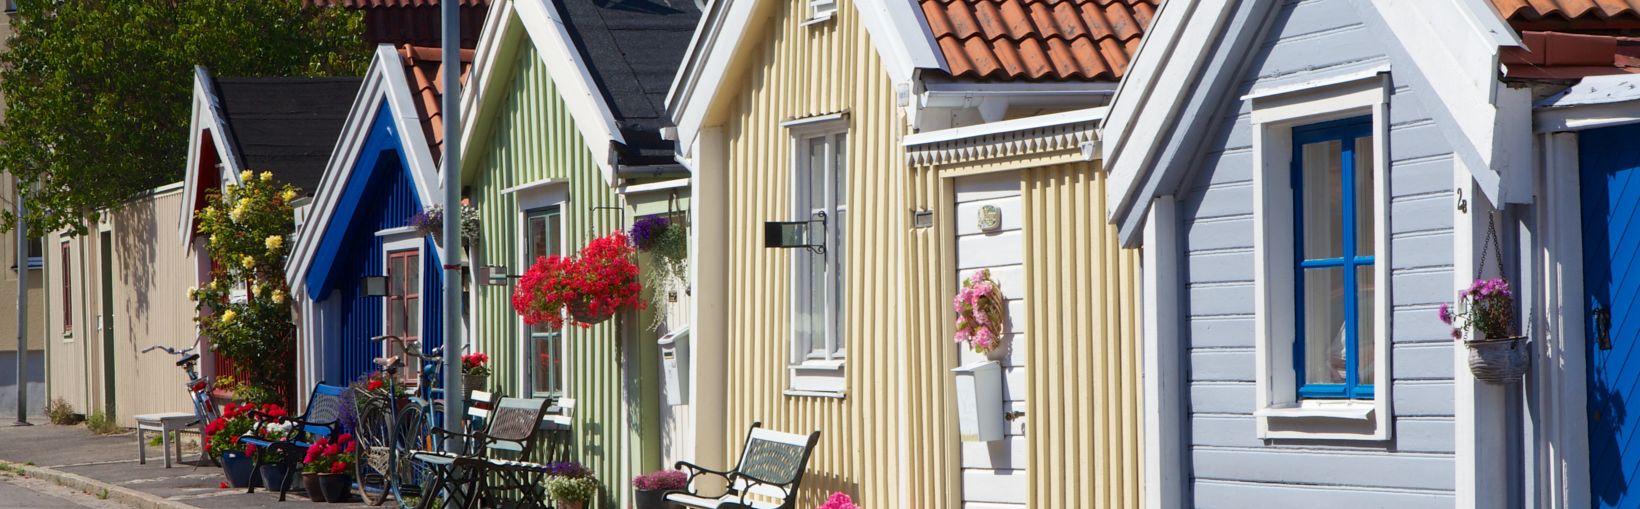 Bâtiments colorés en bois, à un étage, à Karlskrona, en Suède